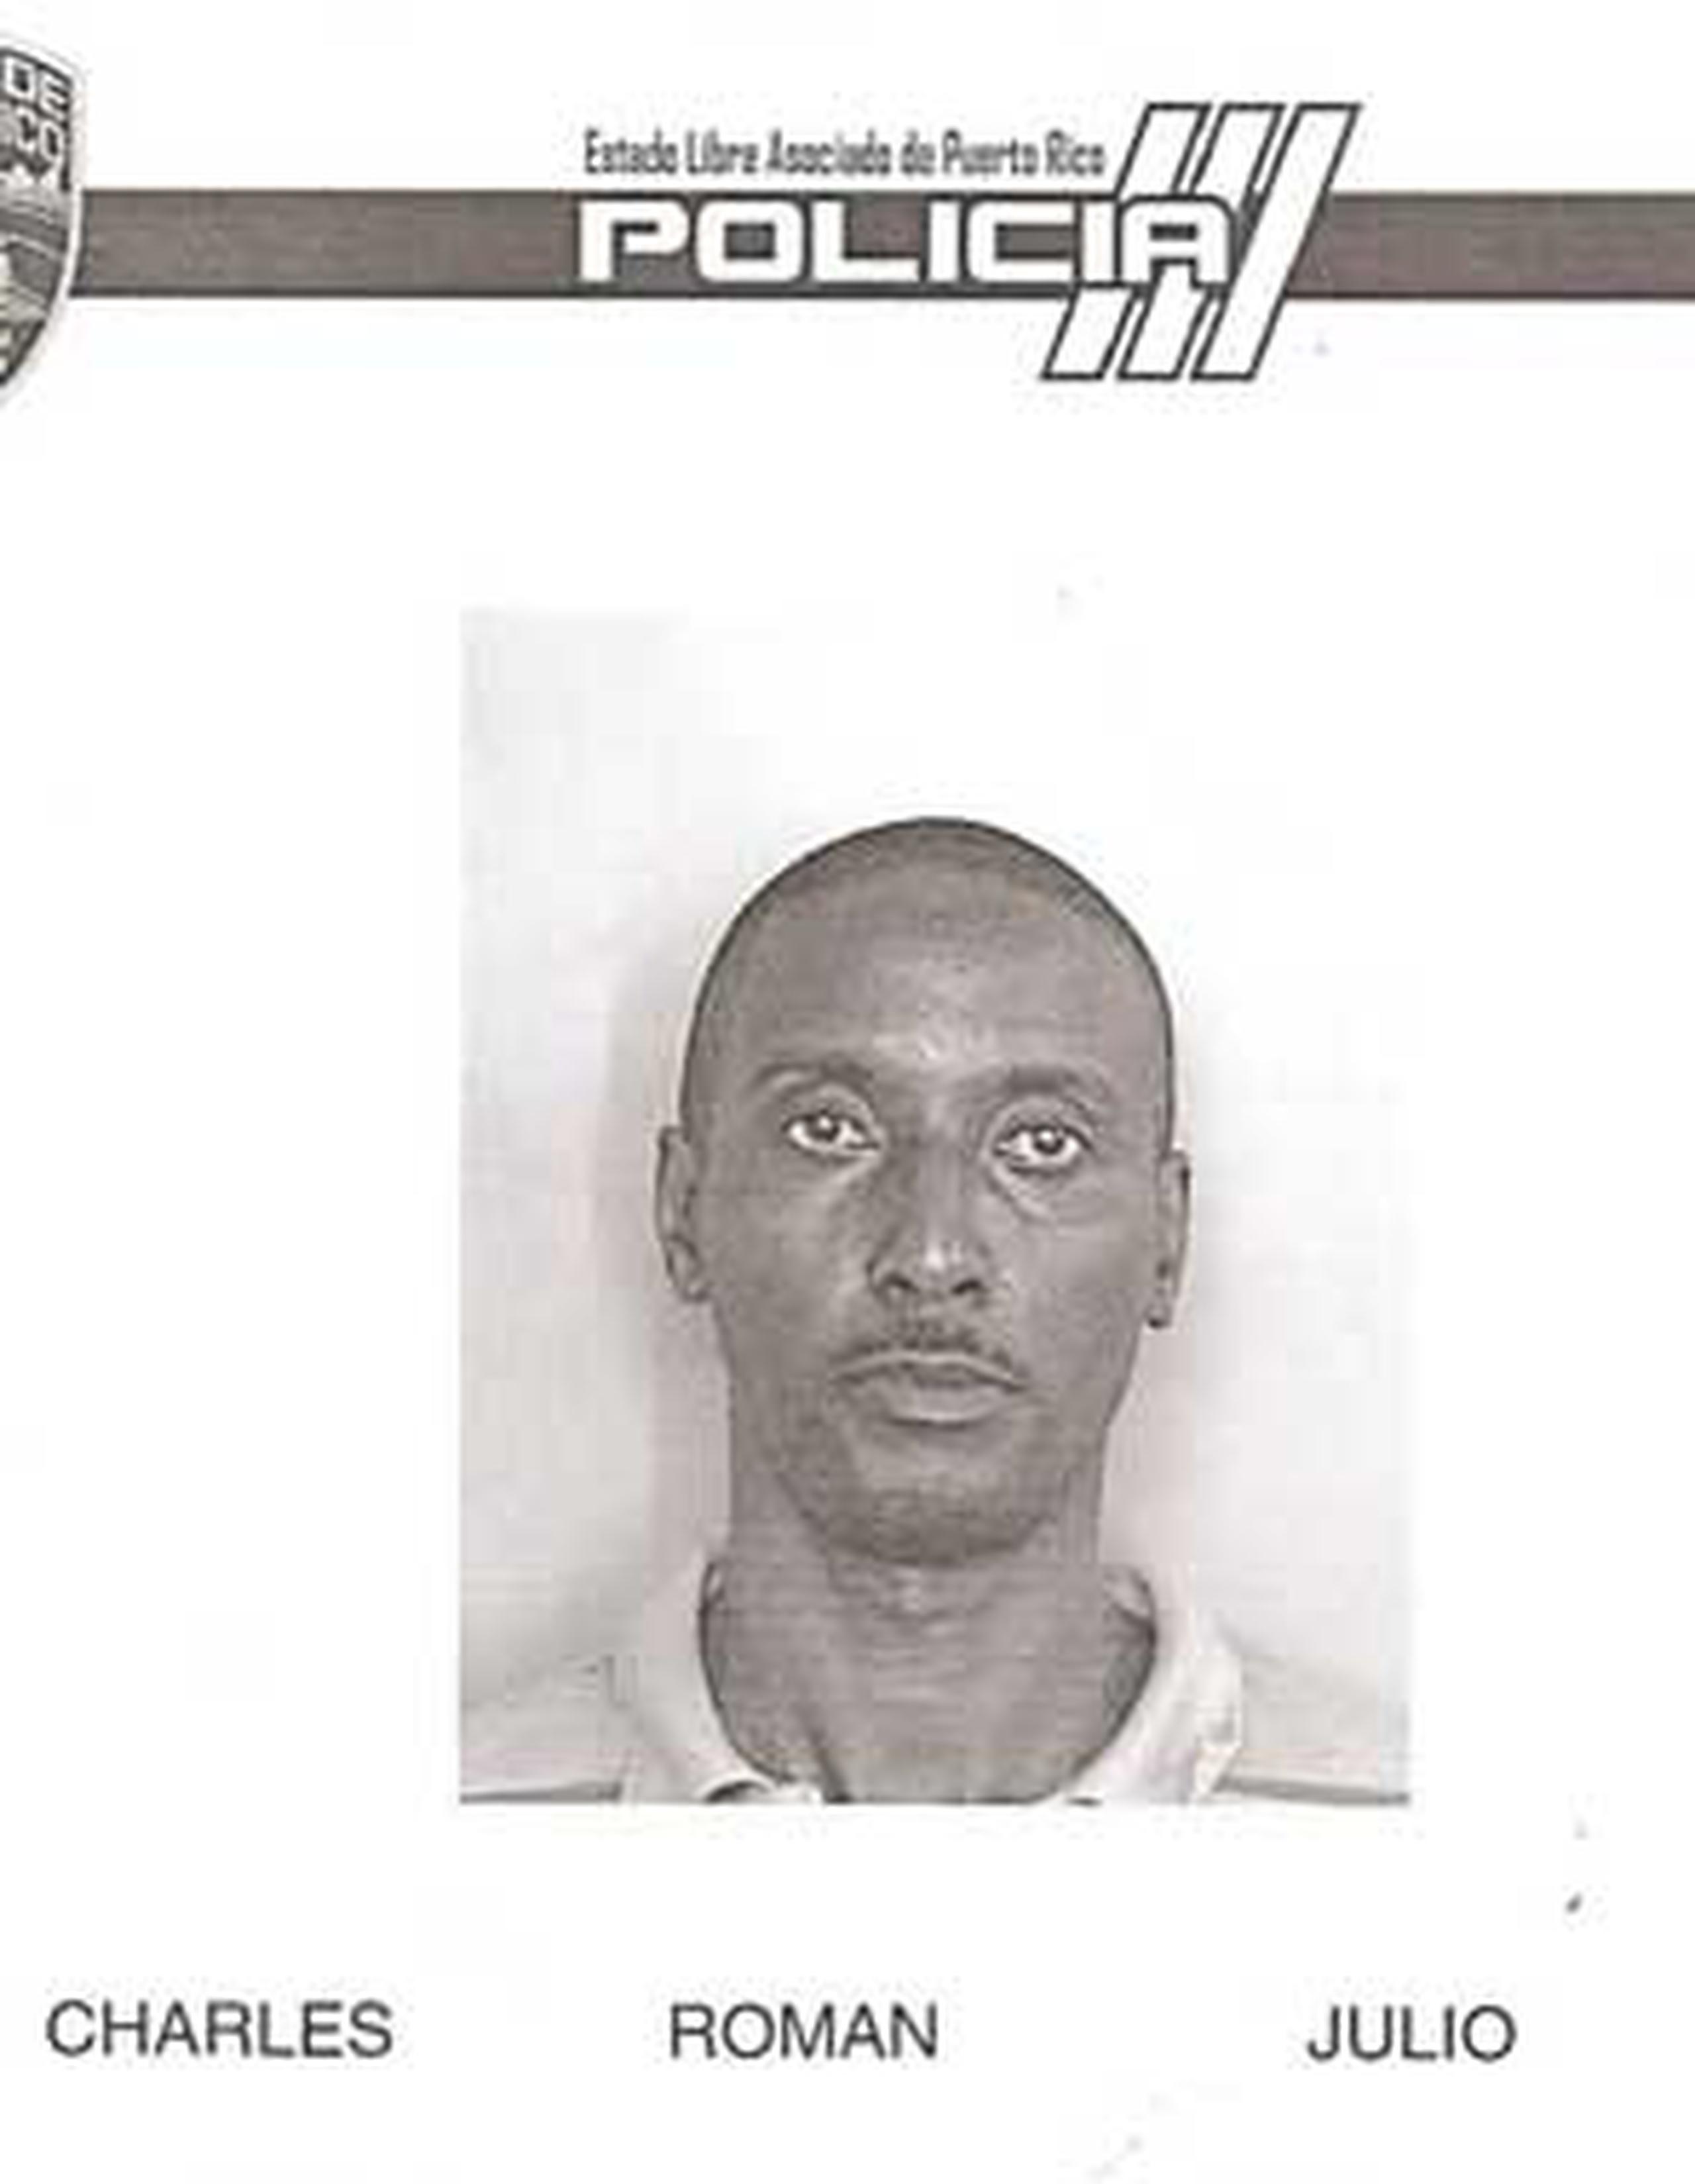 El hombre, identificado como Julio A. Charles Román, de 43 años, fue imputado de estos delitos por hechos cometidos el pasado 22 de julio de 2013. (Suministrada)